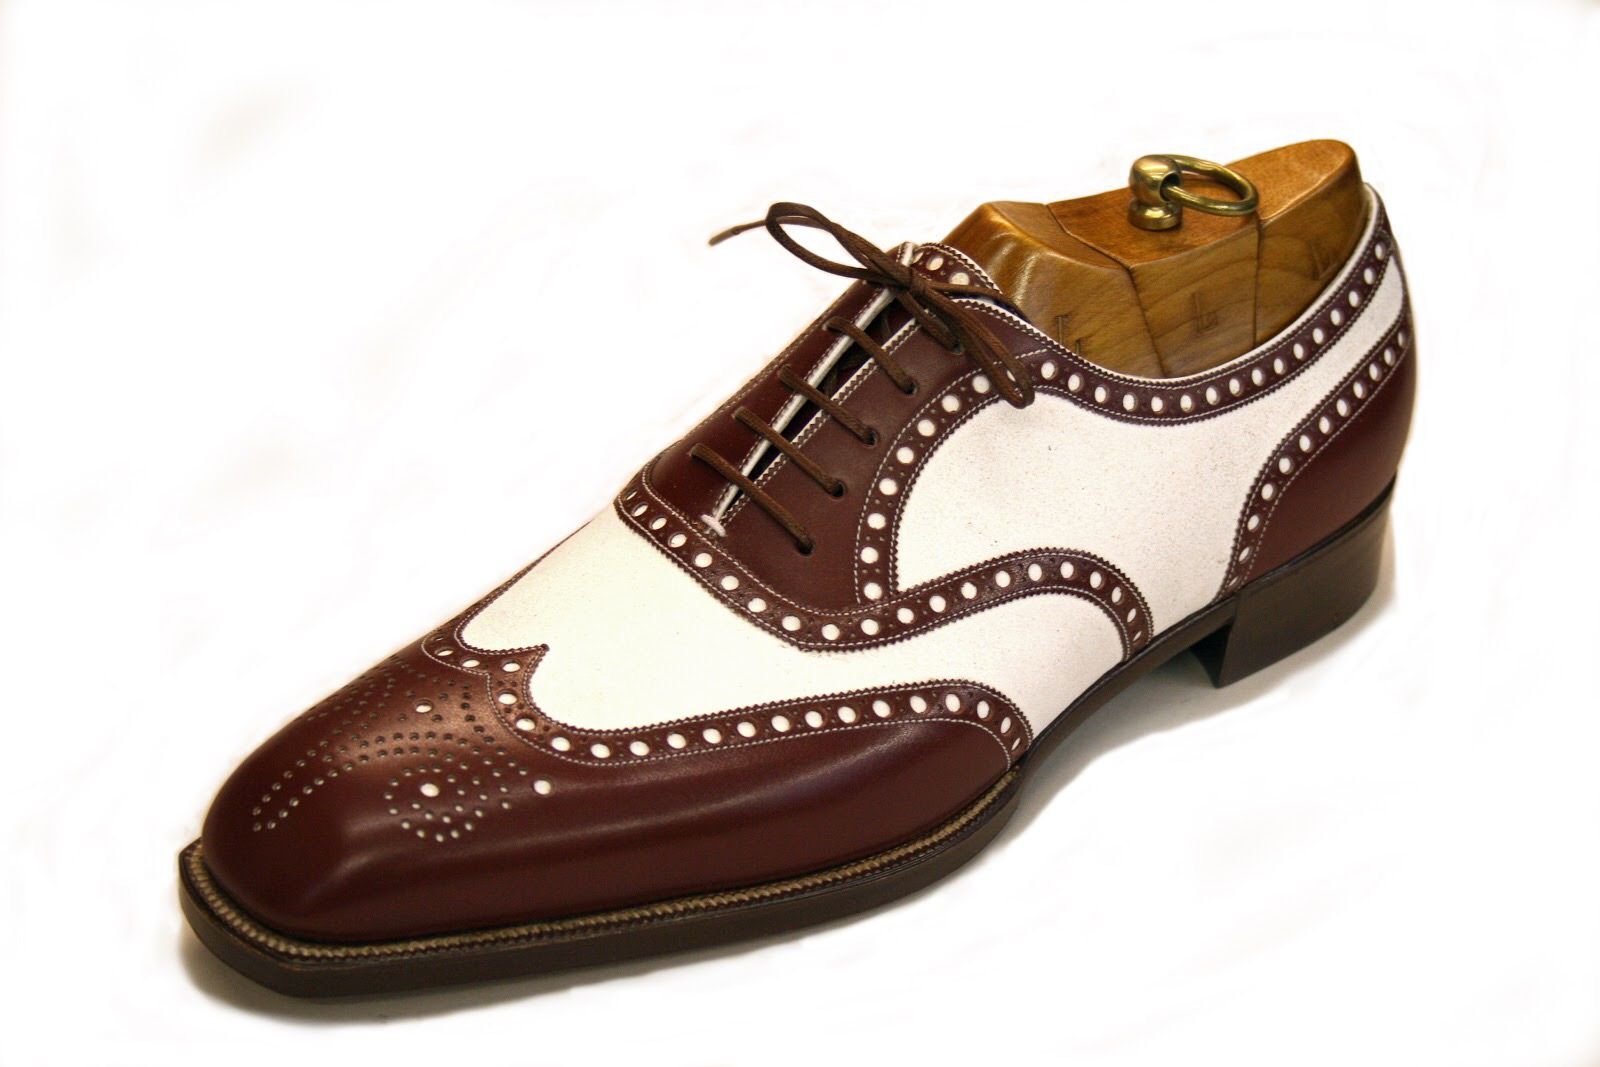 Foster & Son: el refinado zapato inglés hecho a mano 1840